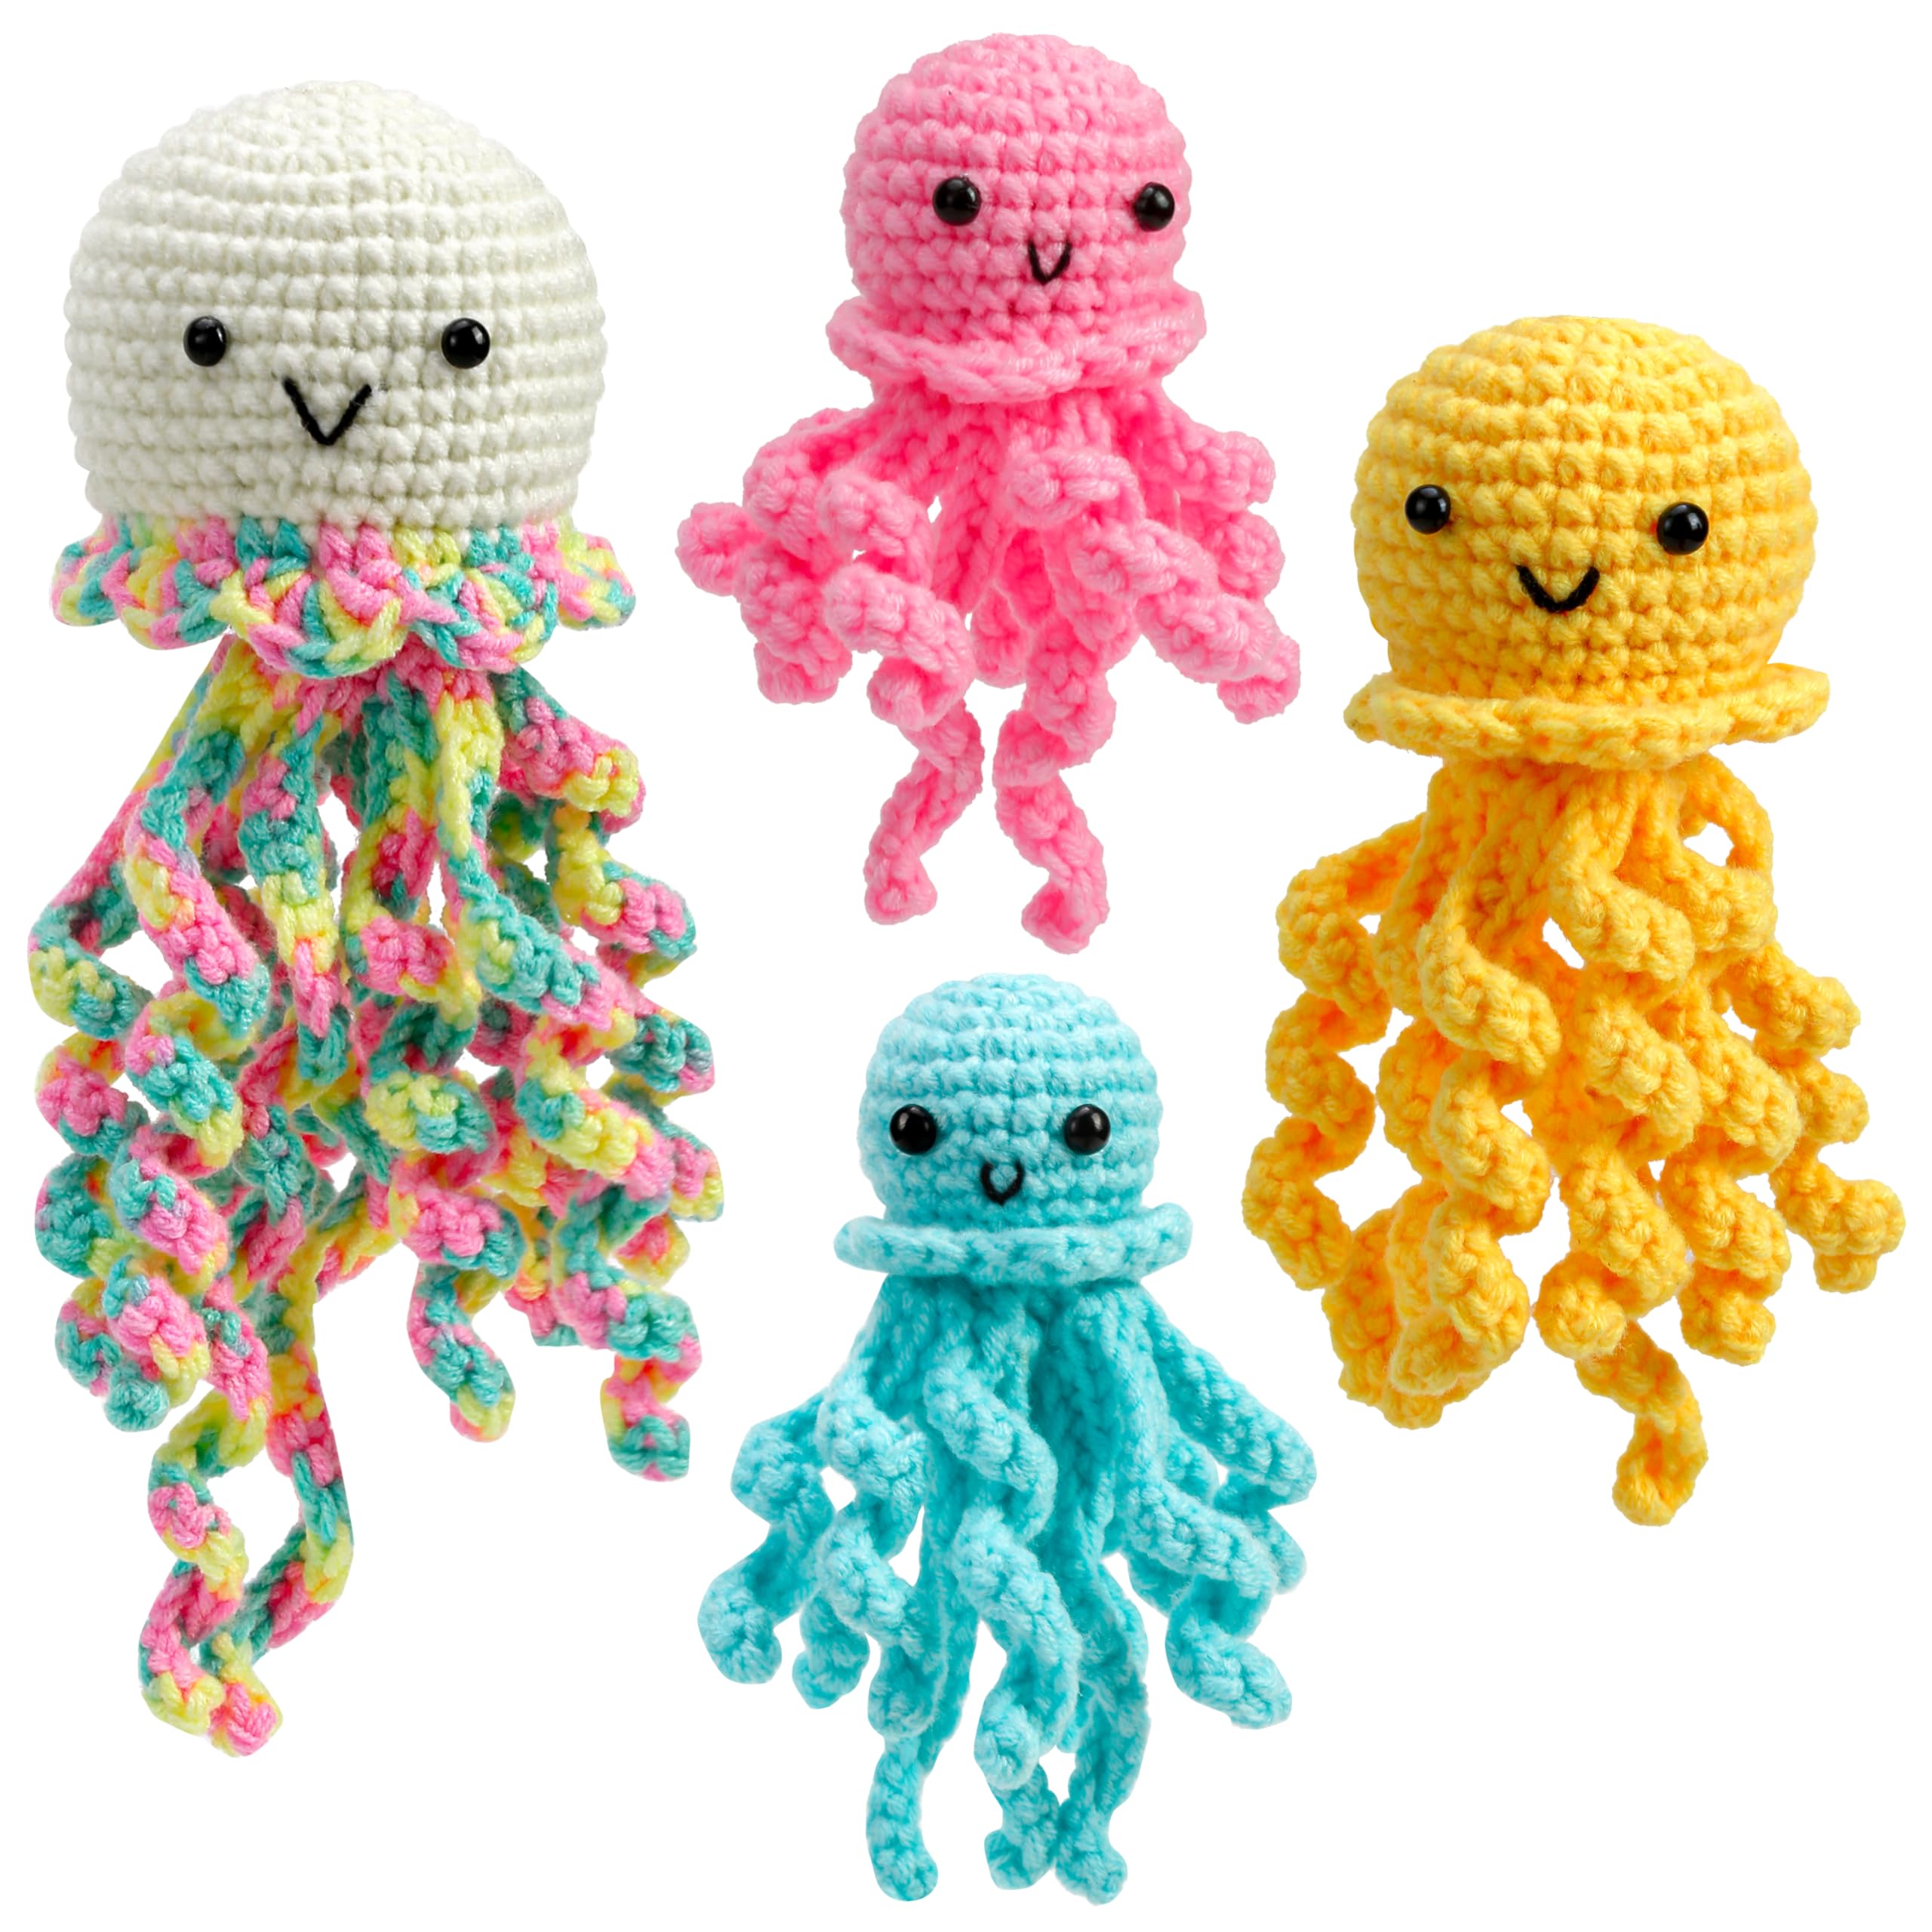  Crochetobe Crochet Kit for Beginners, Crochet Animal